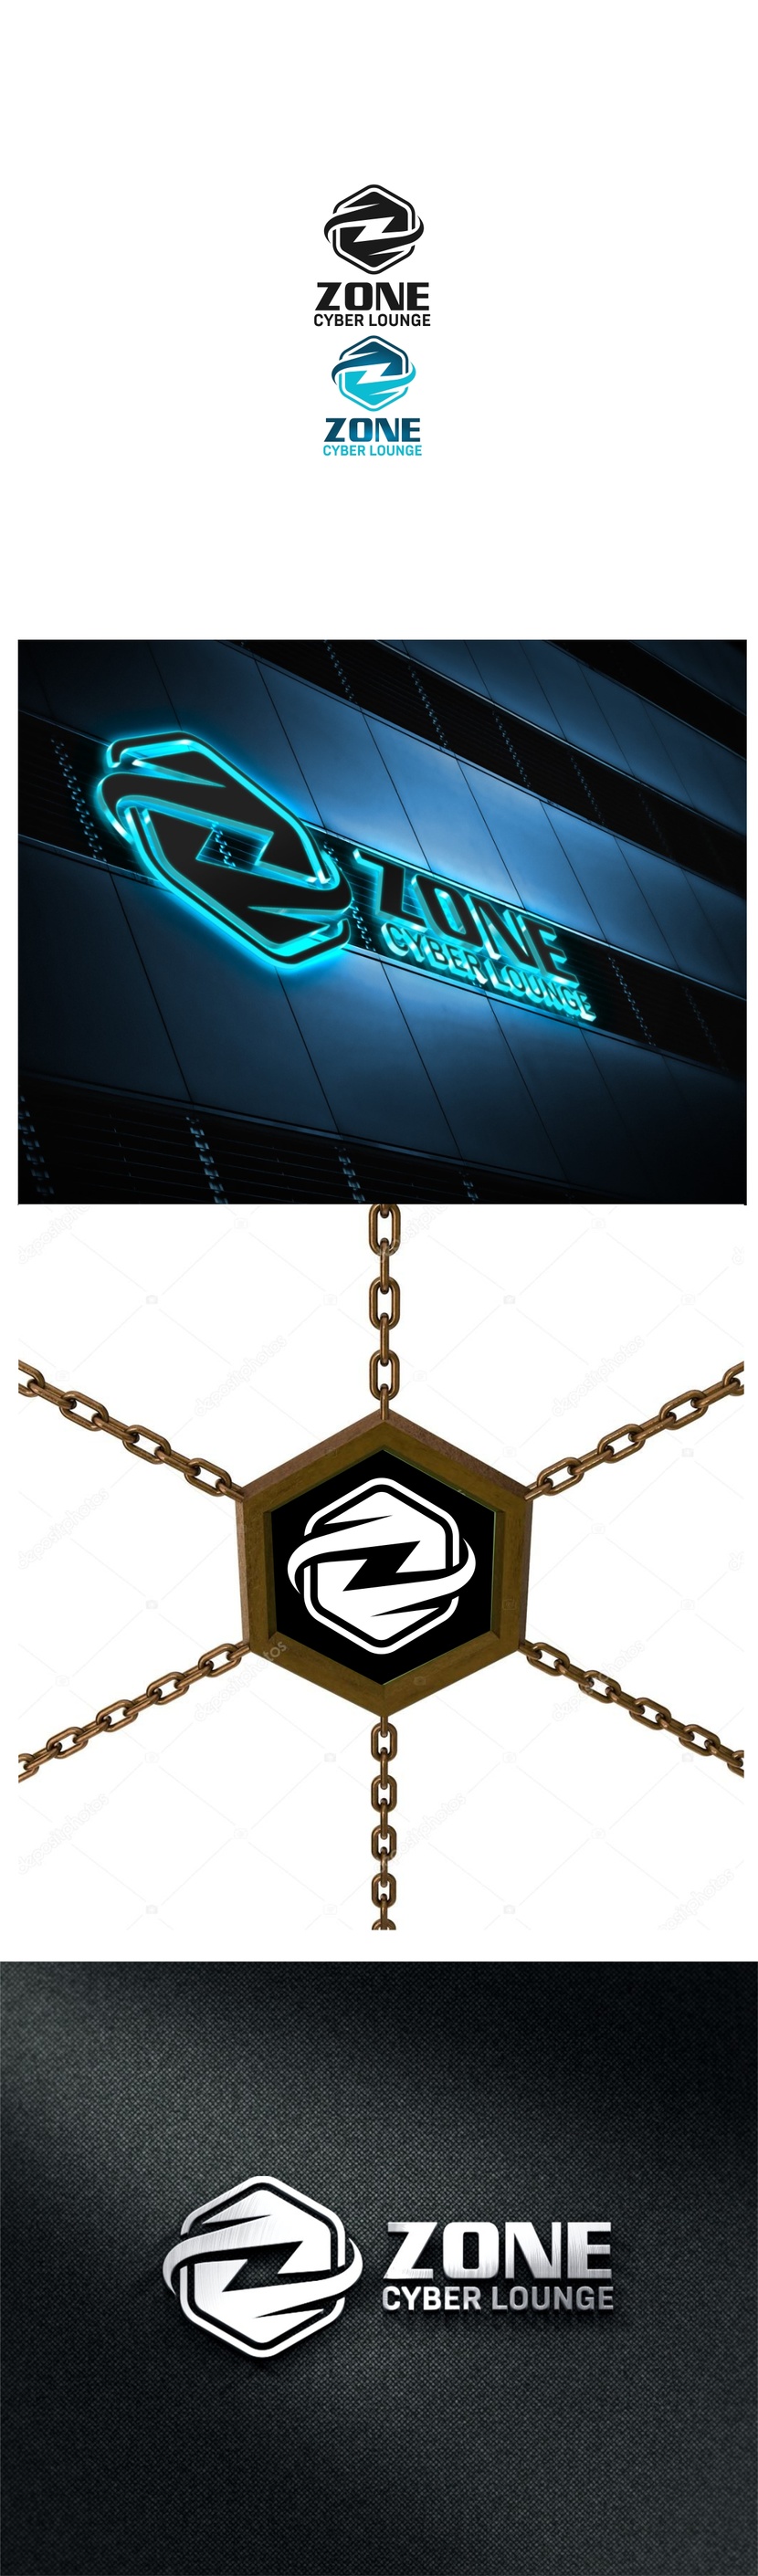 1 - Разработка логотипа для компьютерного клуба